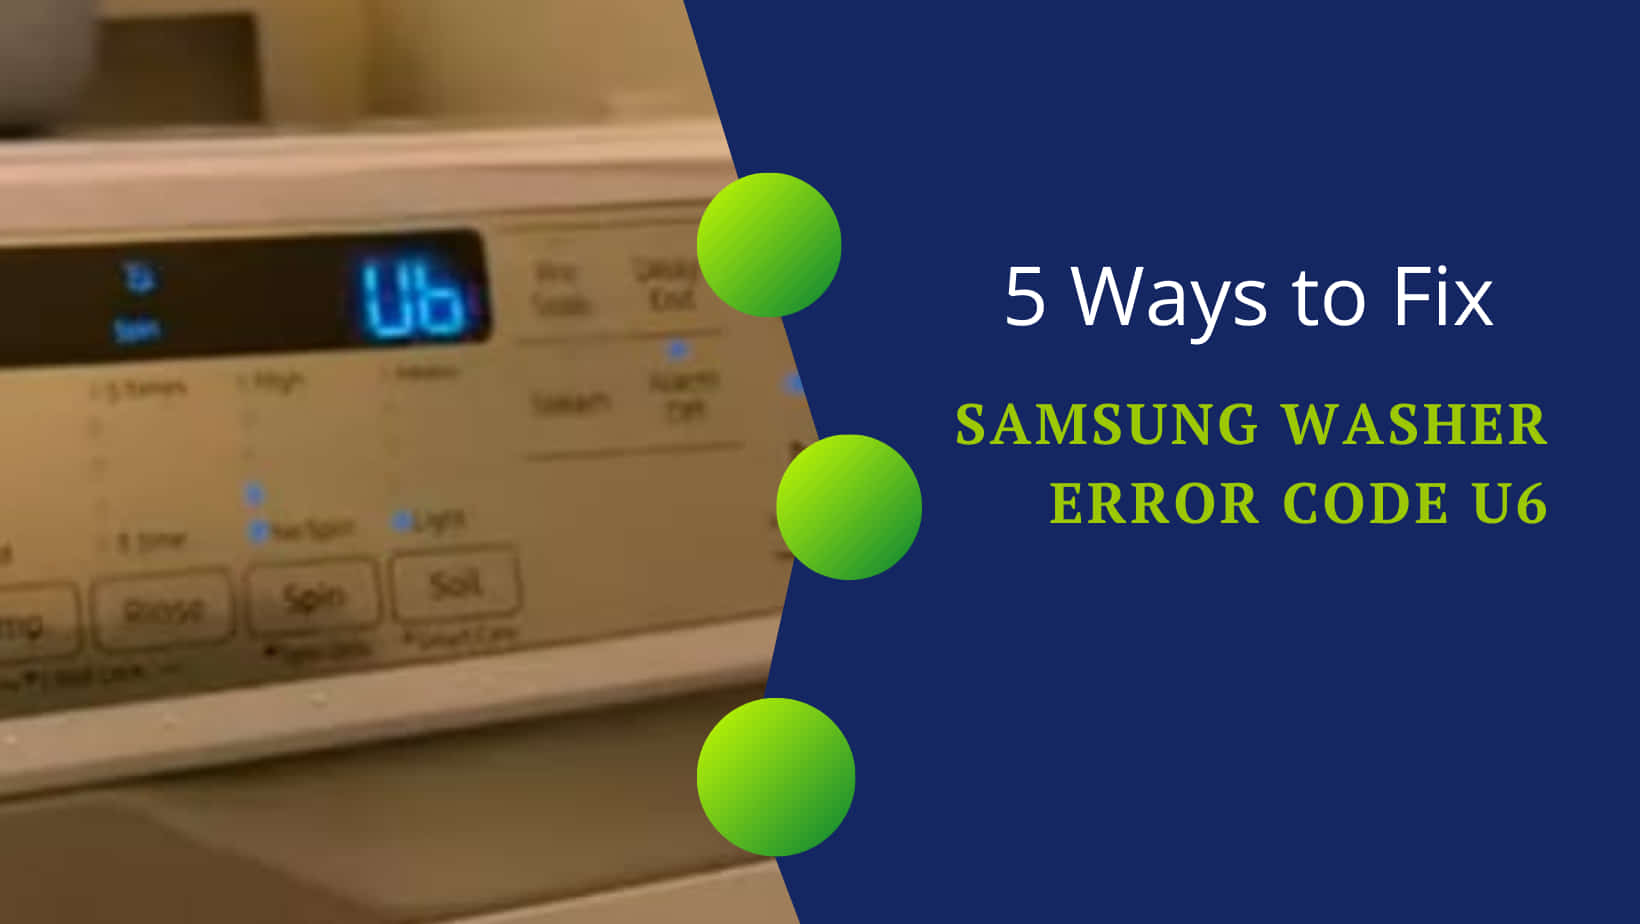 5 Ways to Fix Samsung Washer Error Code U6